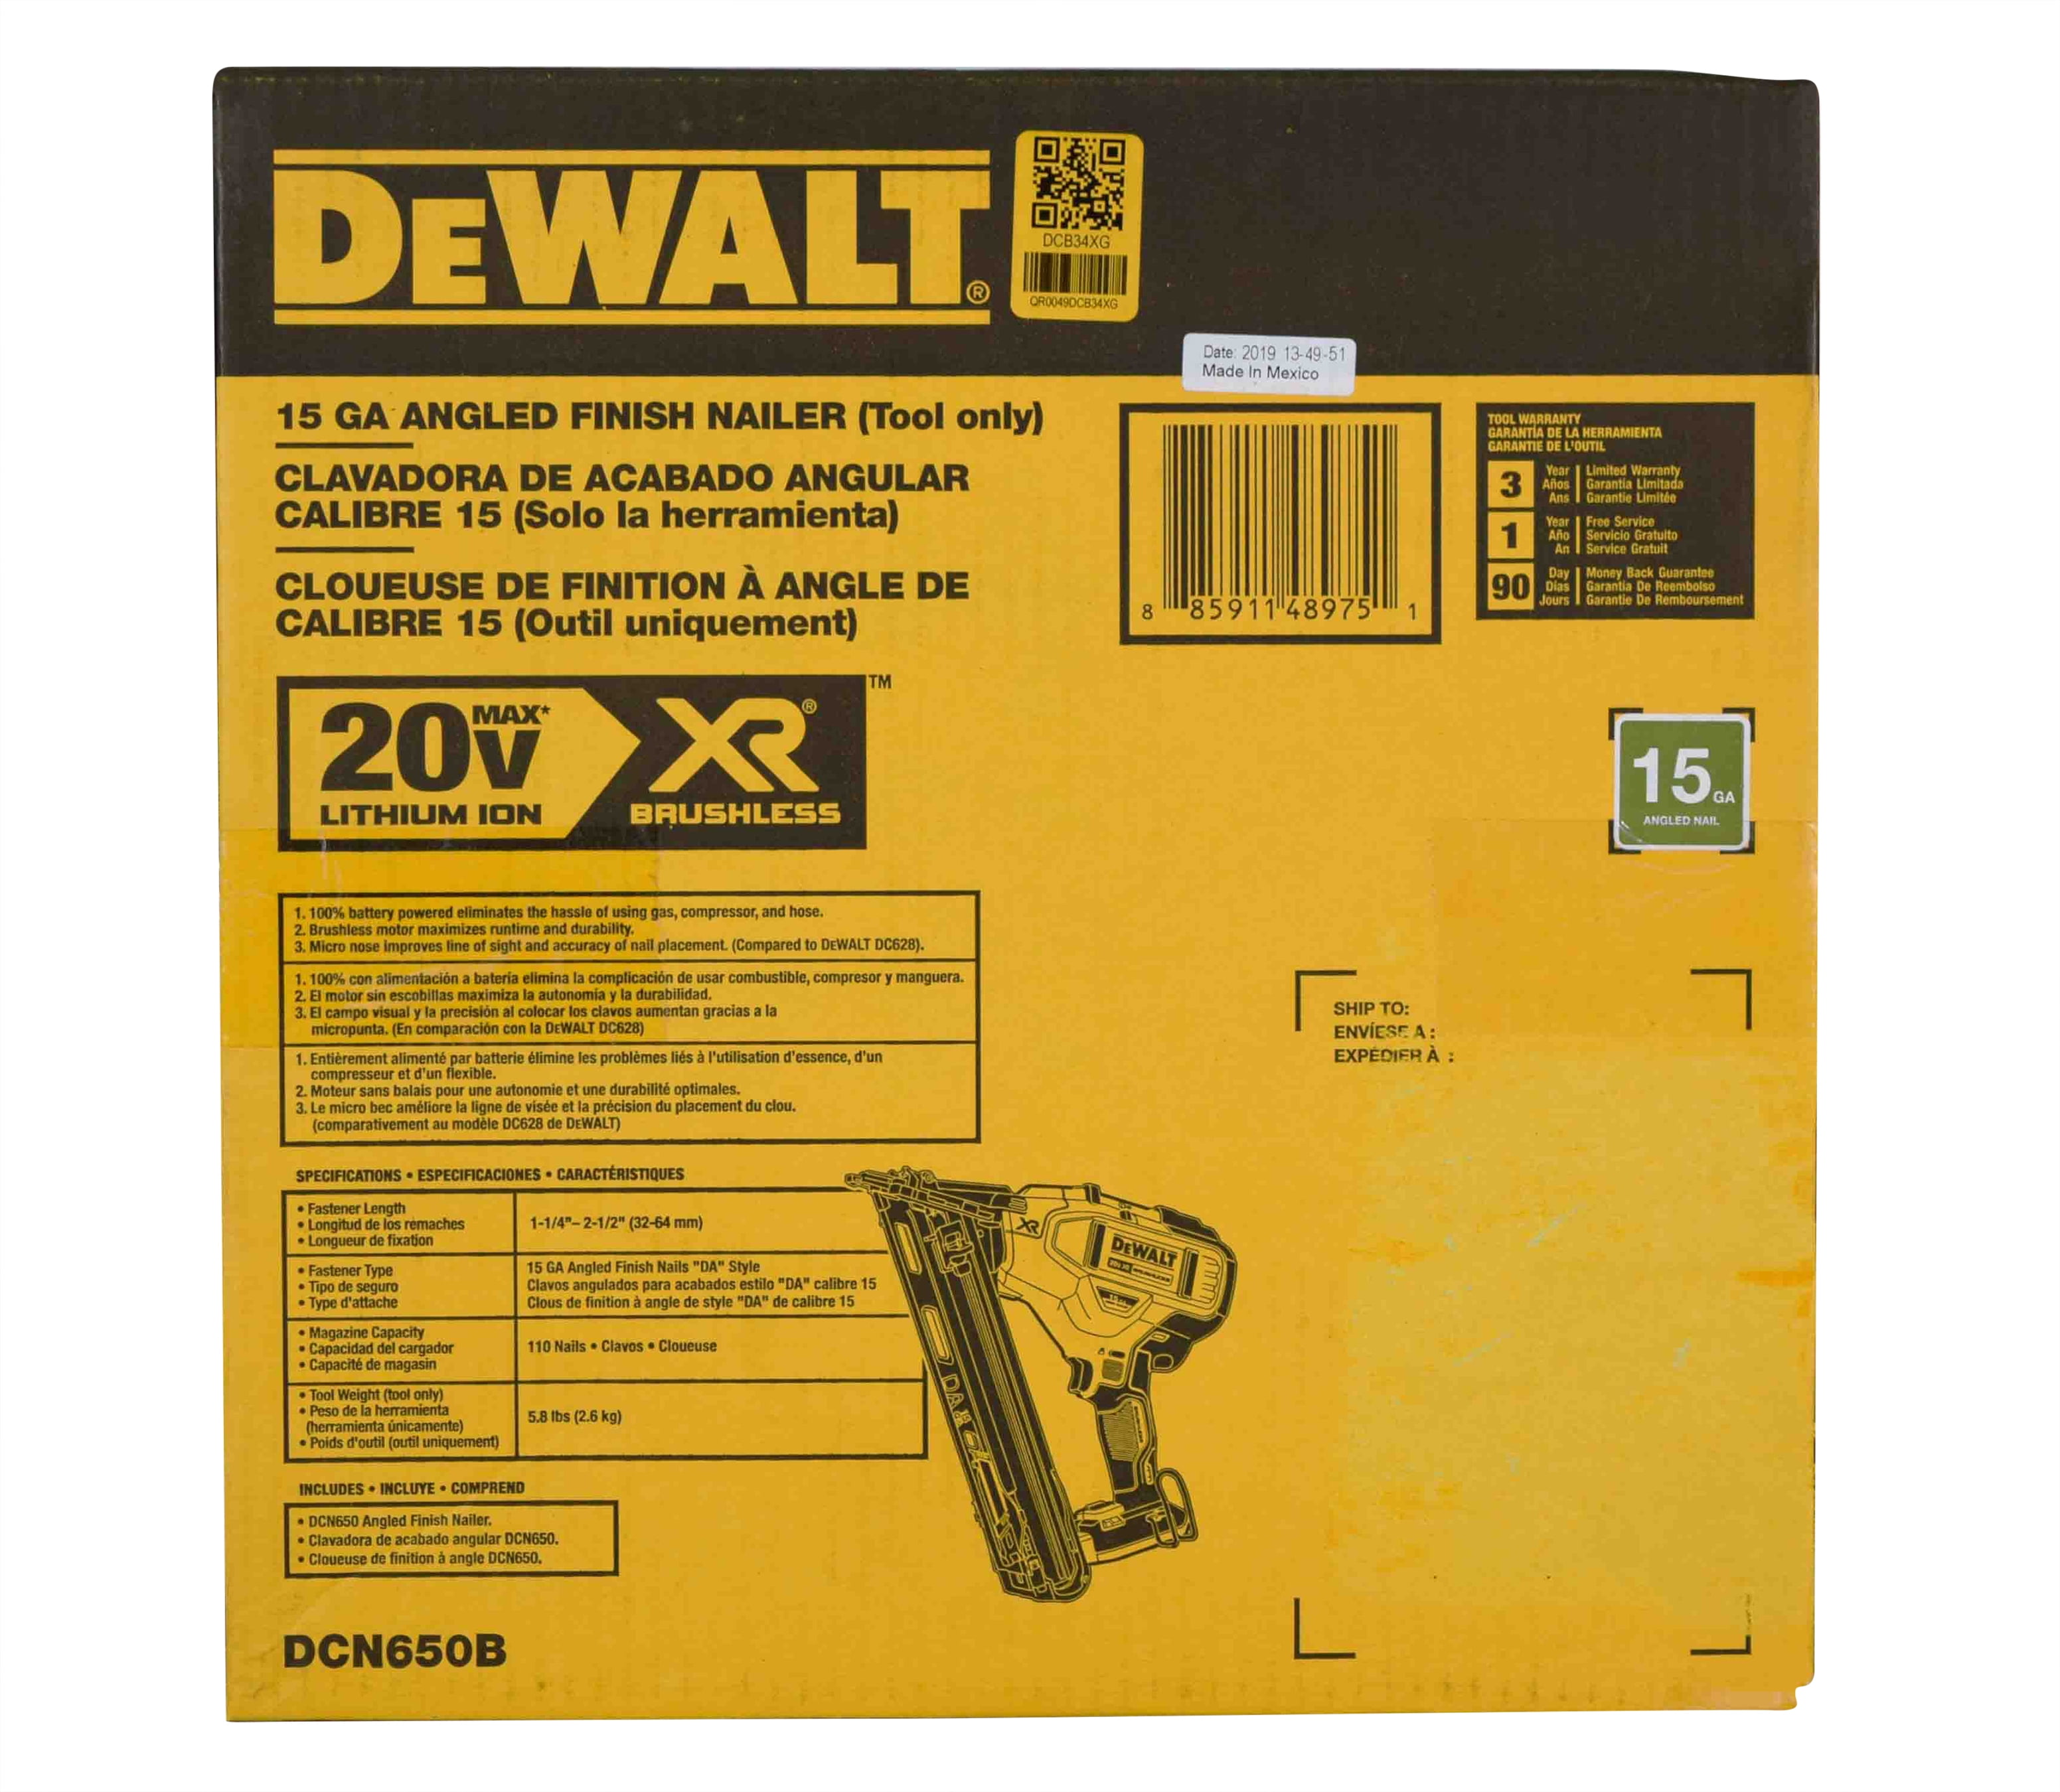 Dewalt 20V Max - Clavadora de acabado angular de calibre 15 (DCN650B)